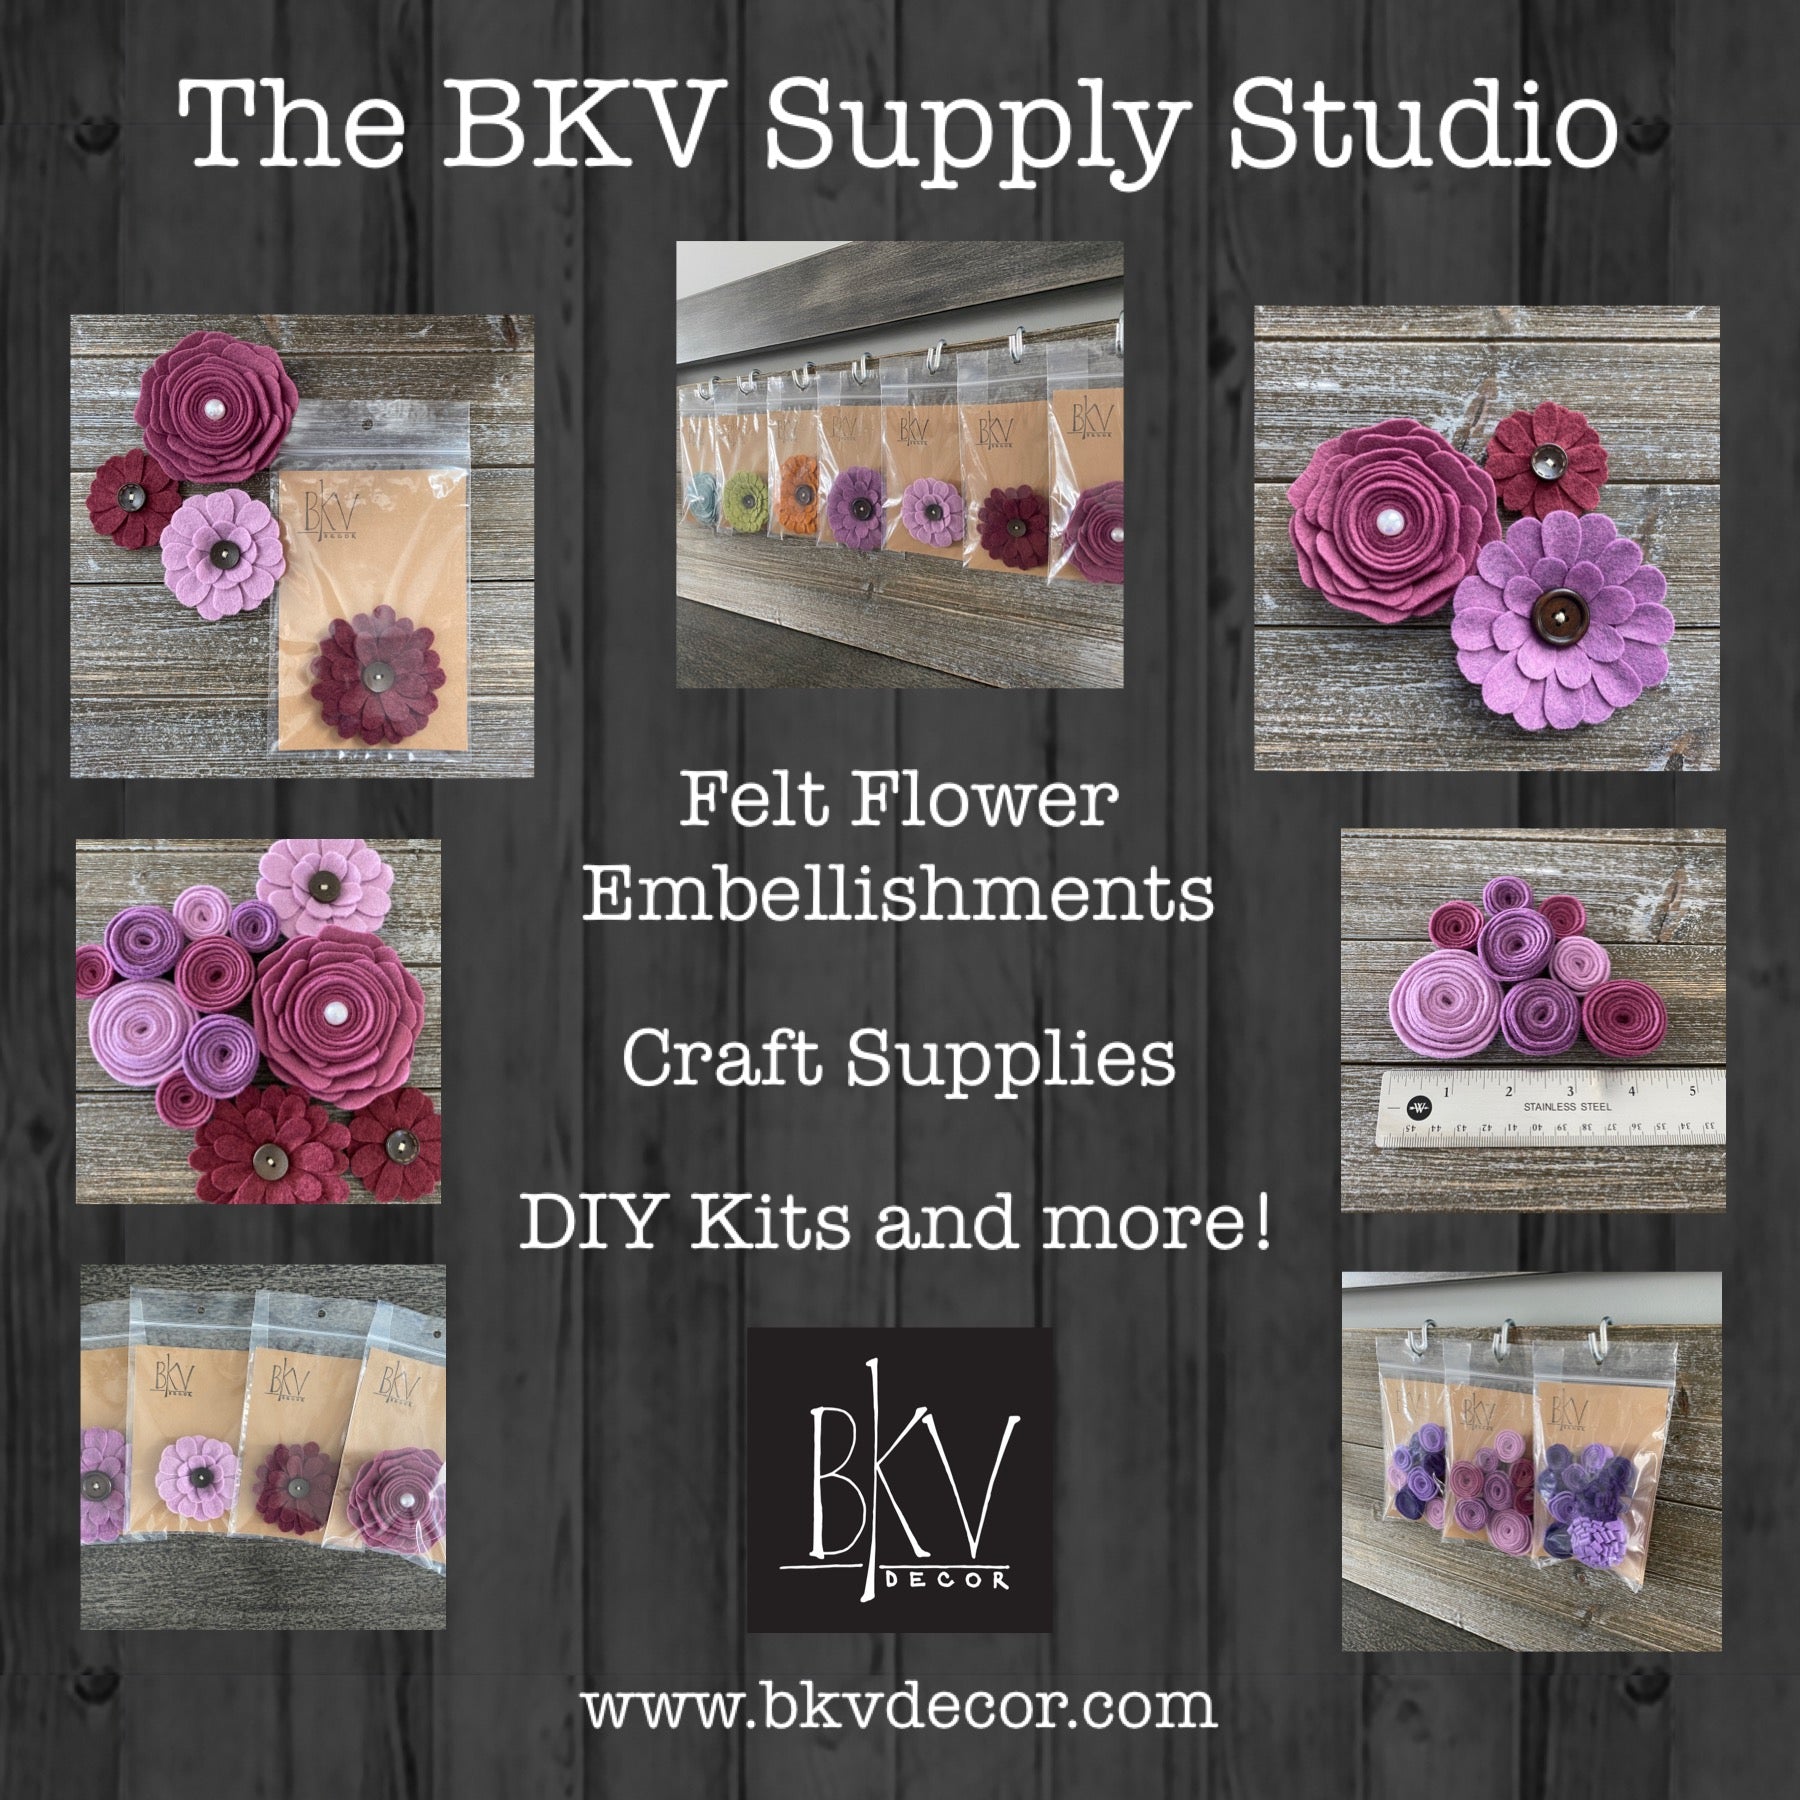 Felt Flower Embellishments for Crafts - Red White and Blue Flowers - V –  BKV Decor